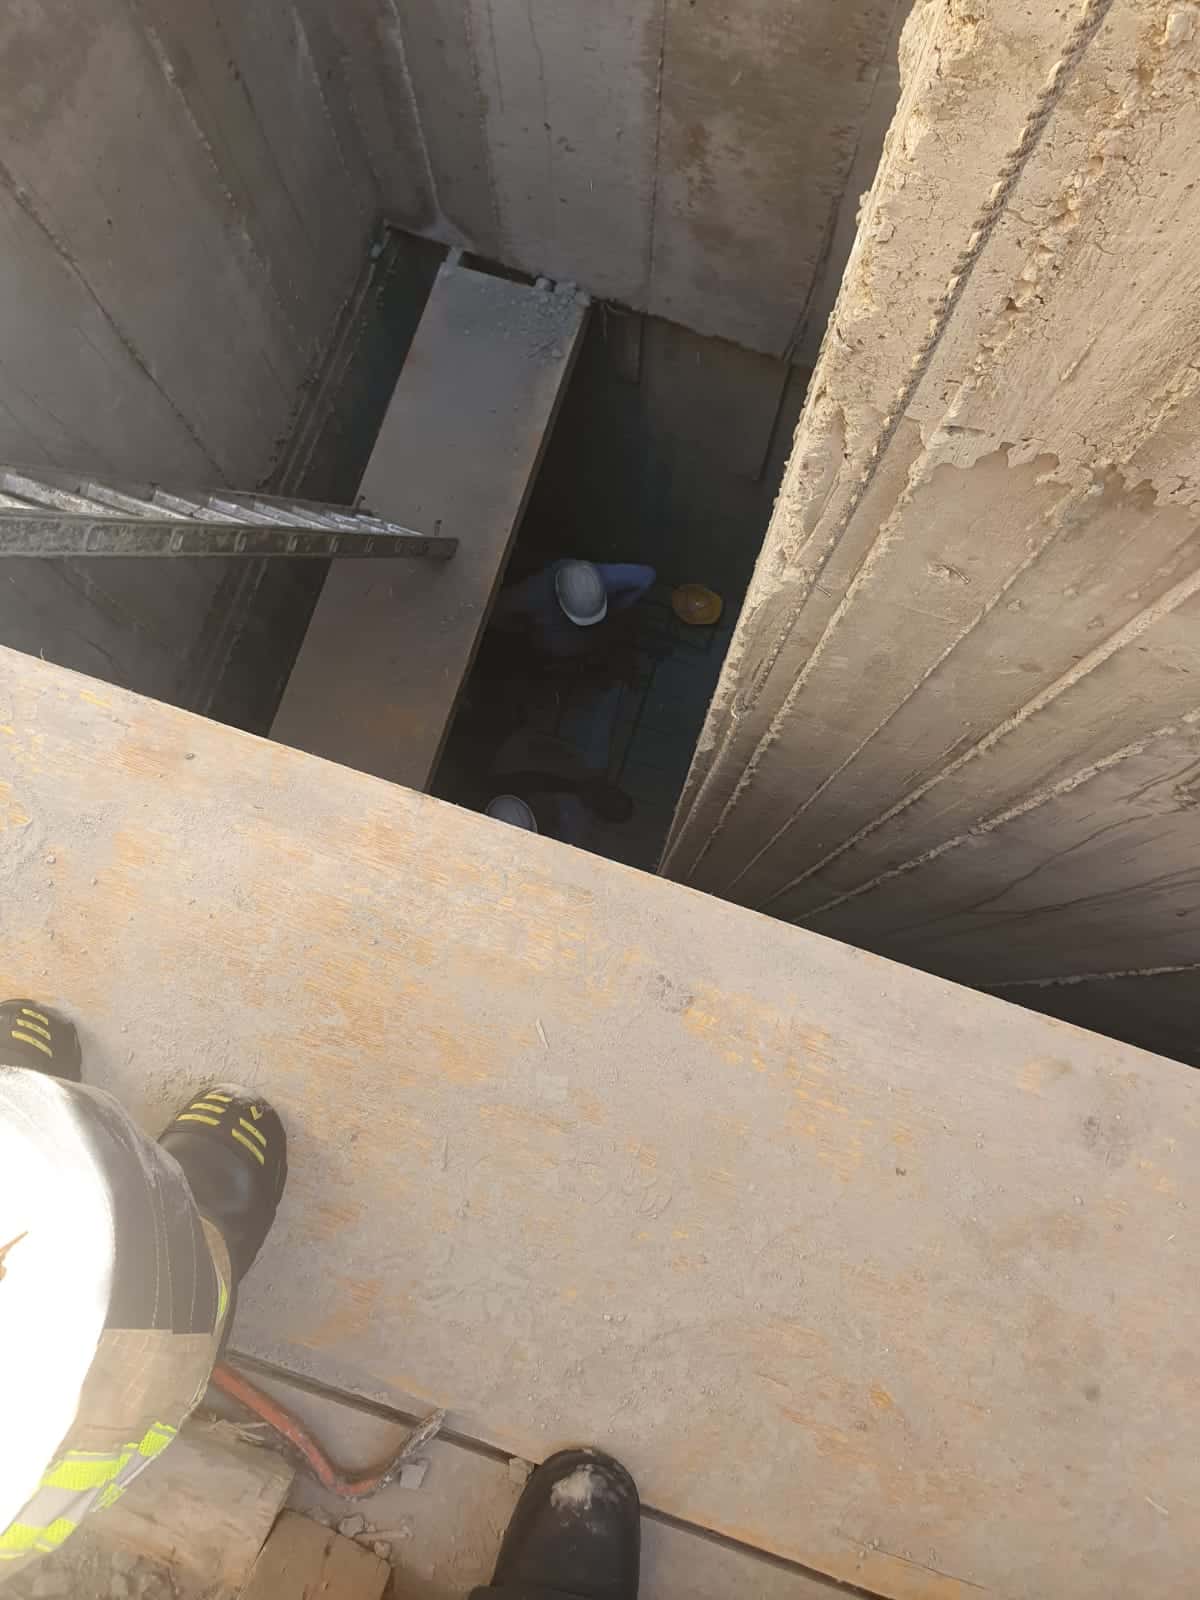 פועל, בן 31, בניין נפל לפיר מעלית בחיפה | צפו